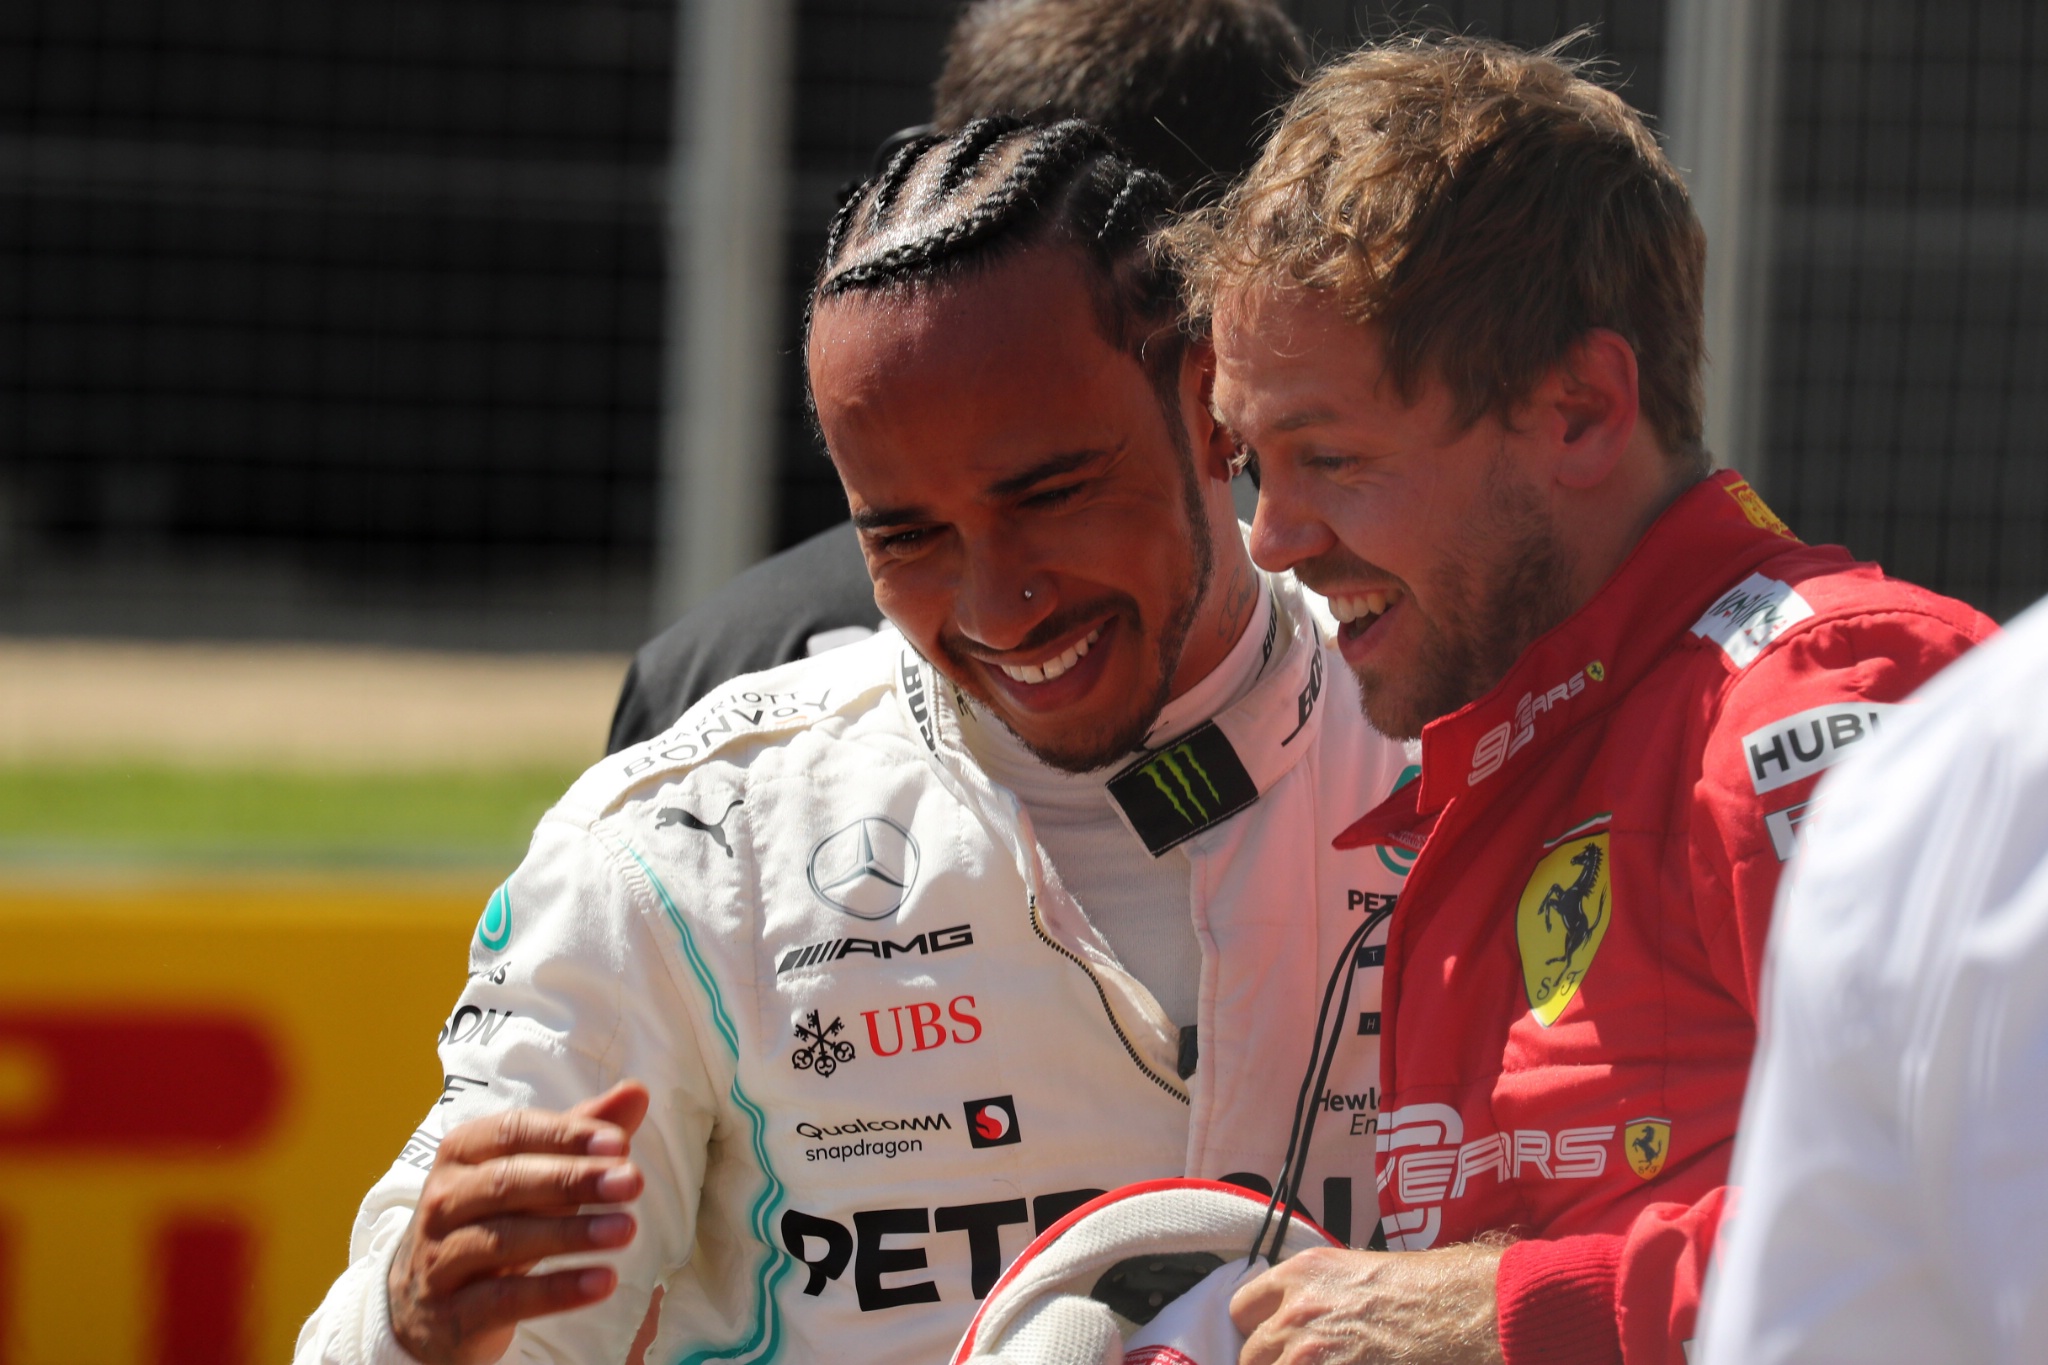  - Qualifying, 2nd place Lewis Hamilton (GBR) Mercedes AMG F1 W10 and Sebastian Vettel (GER) Scuderia Ferrari SF90 pole